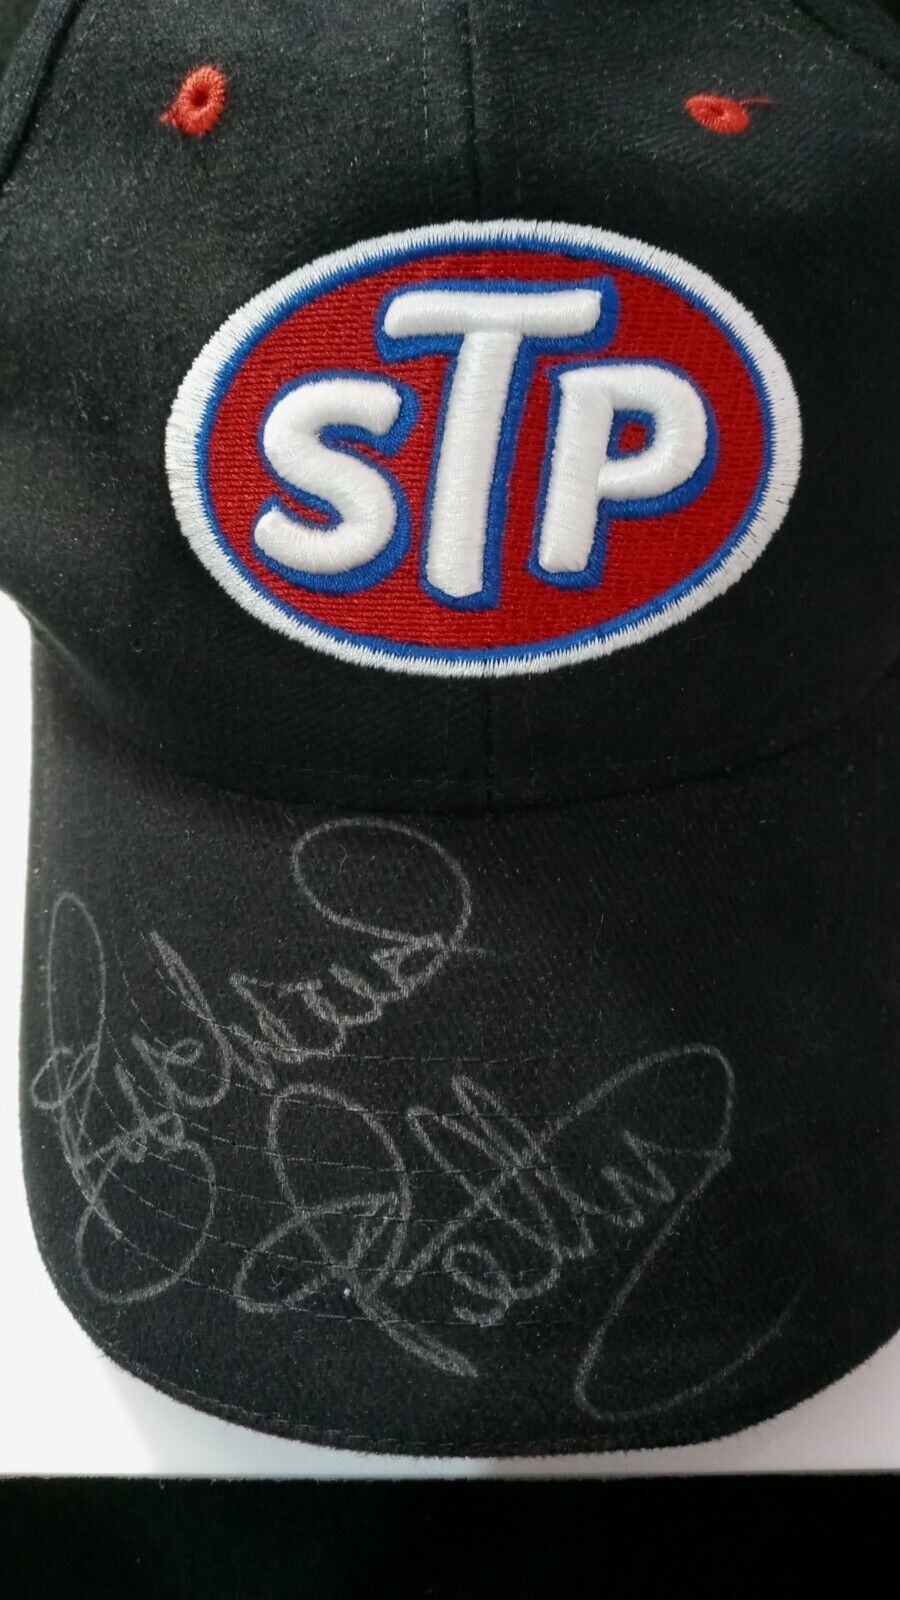 Richard Petty Autographed Stp Cap